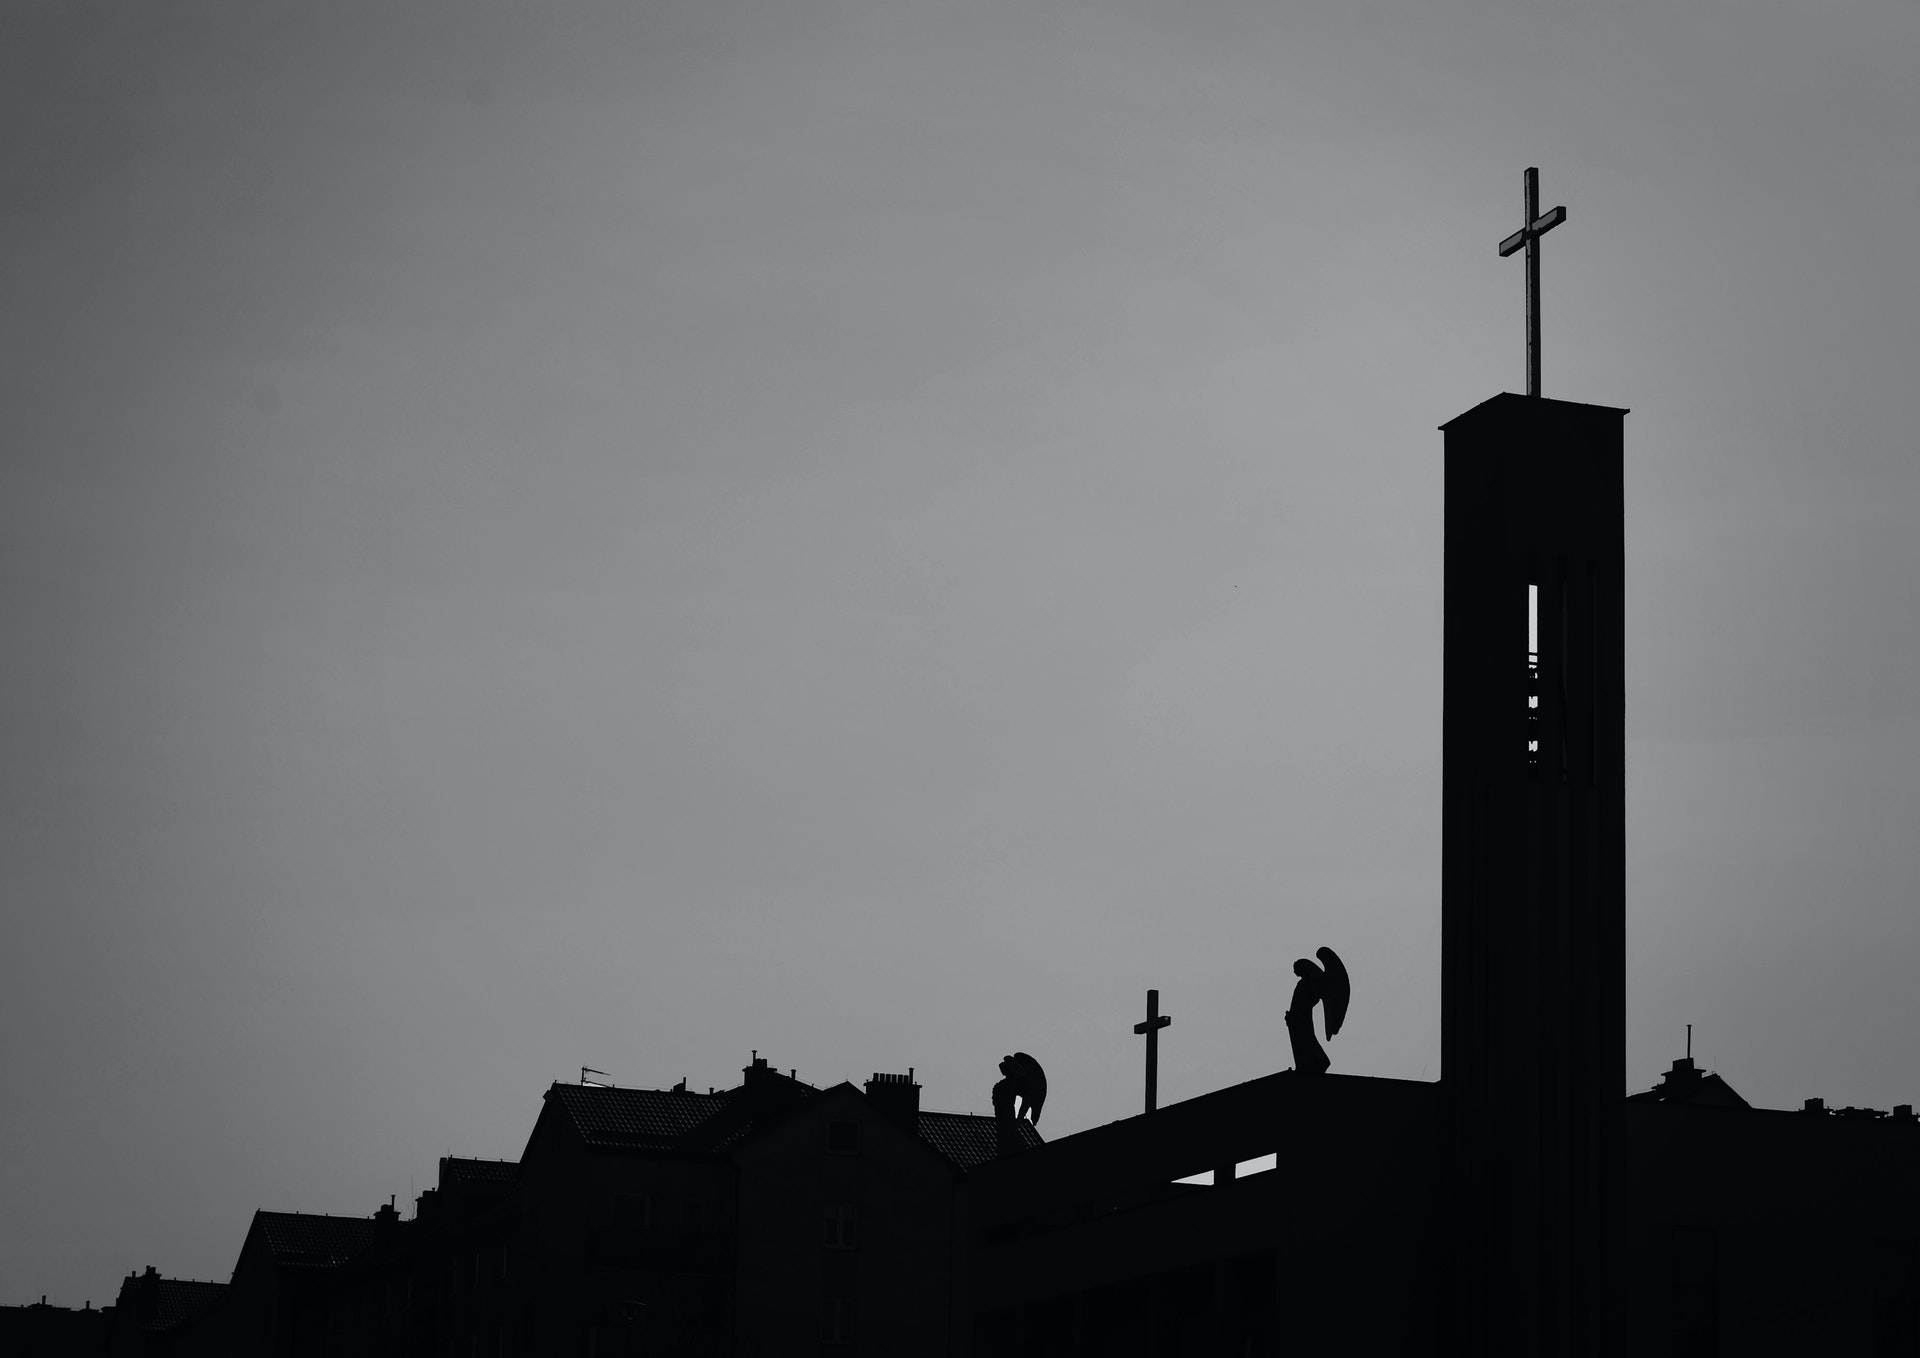 silhouette of a church